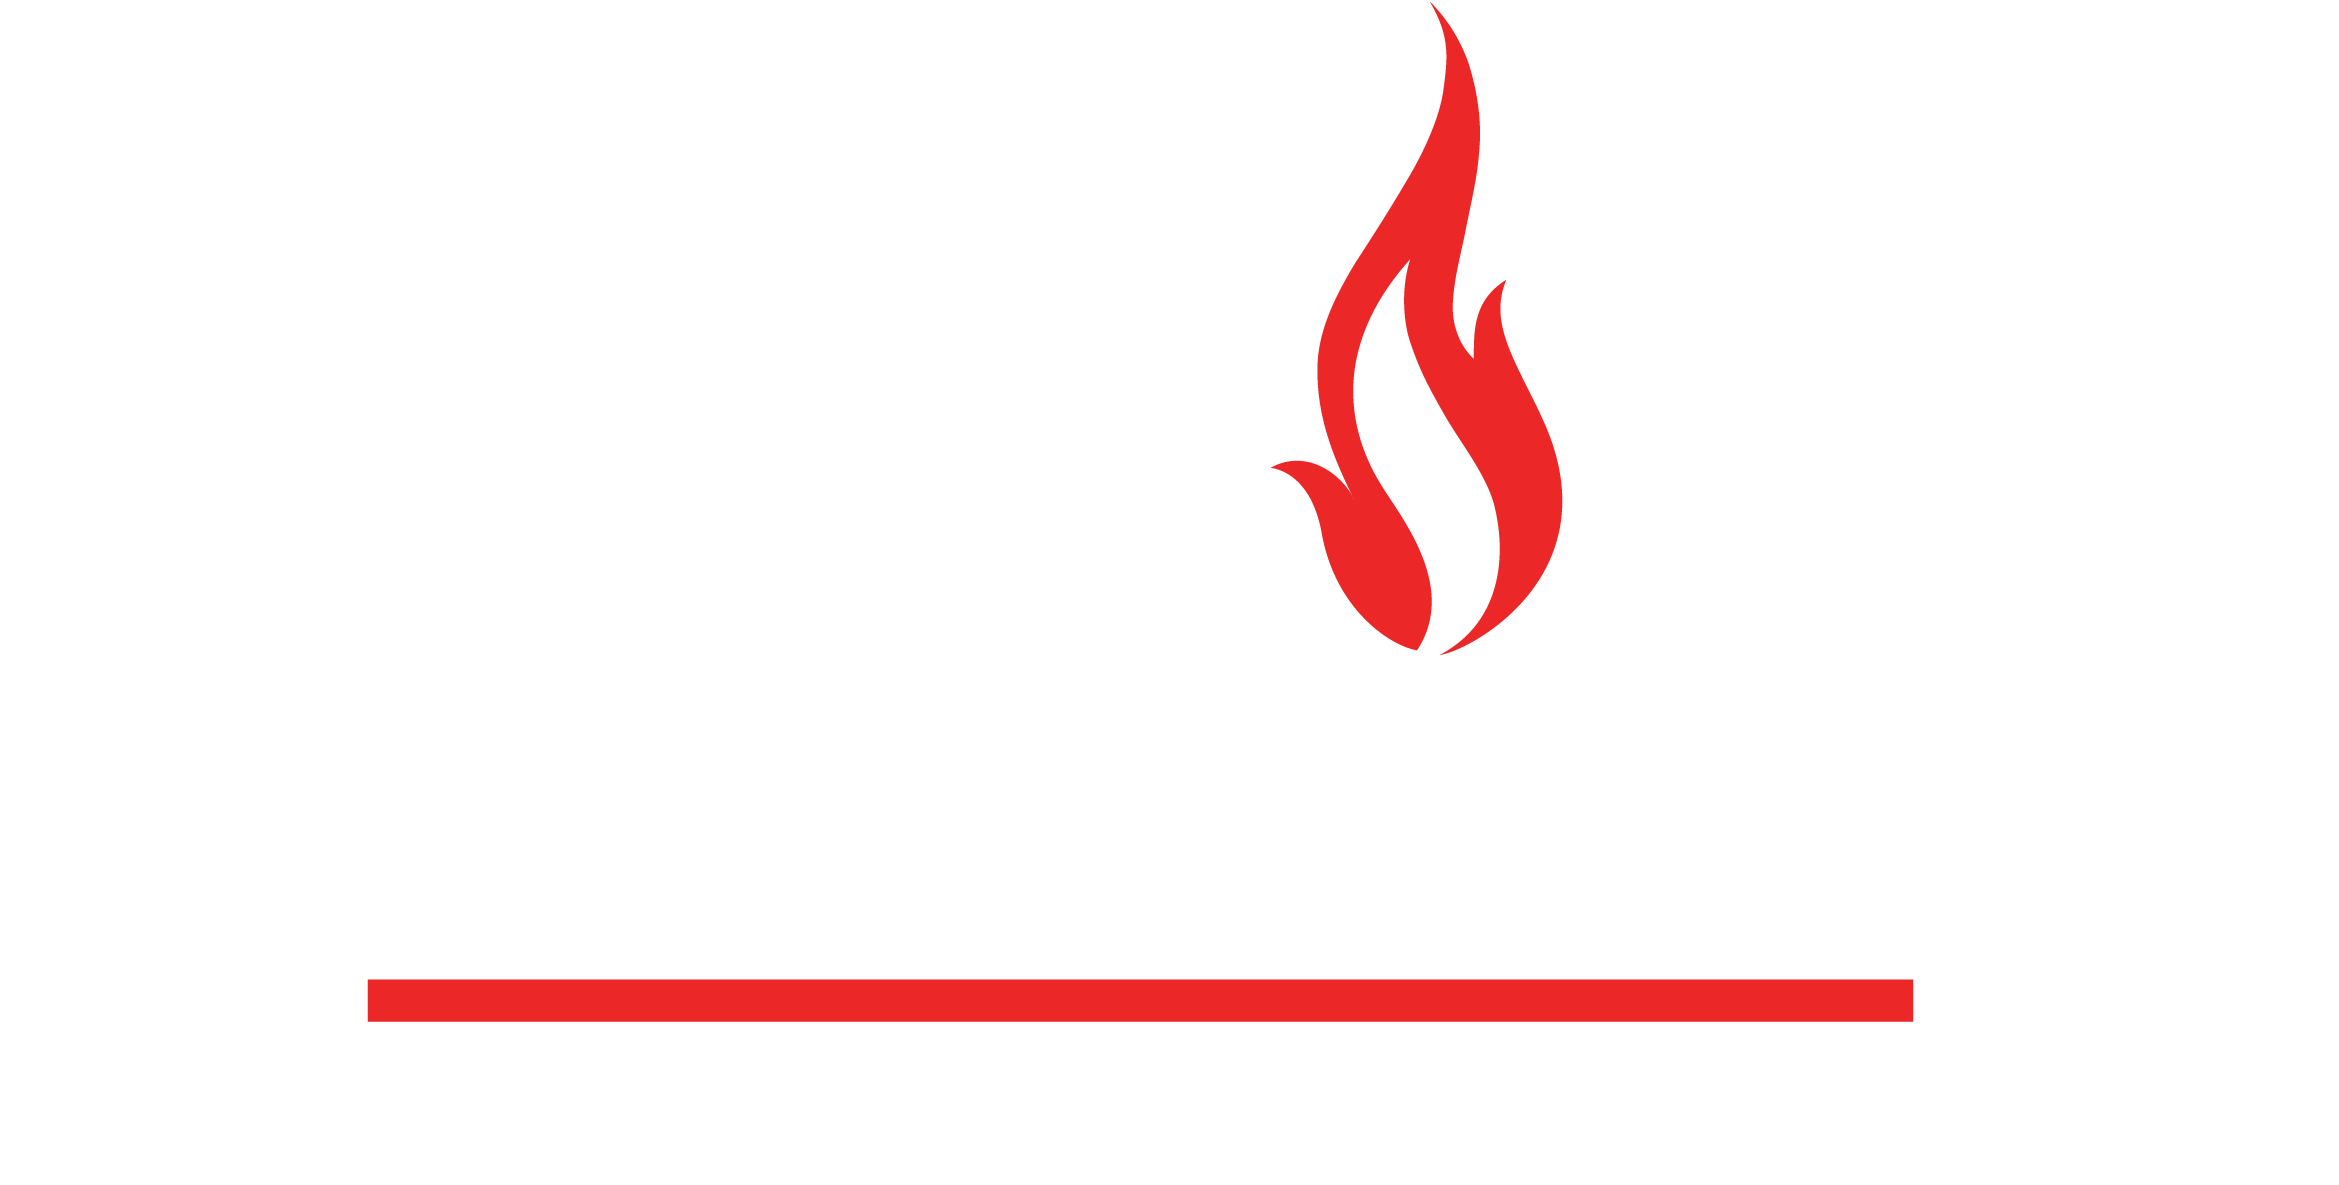 Texas Gas Measurement Service